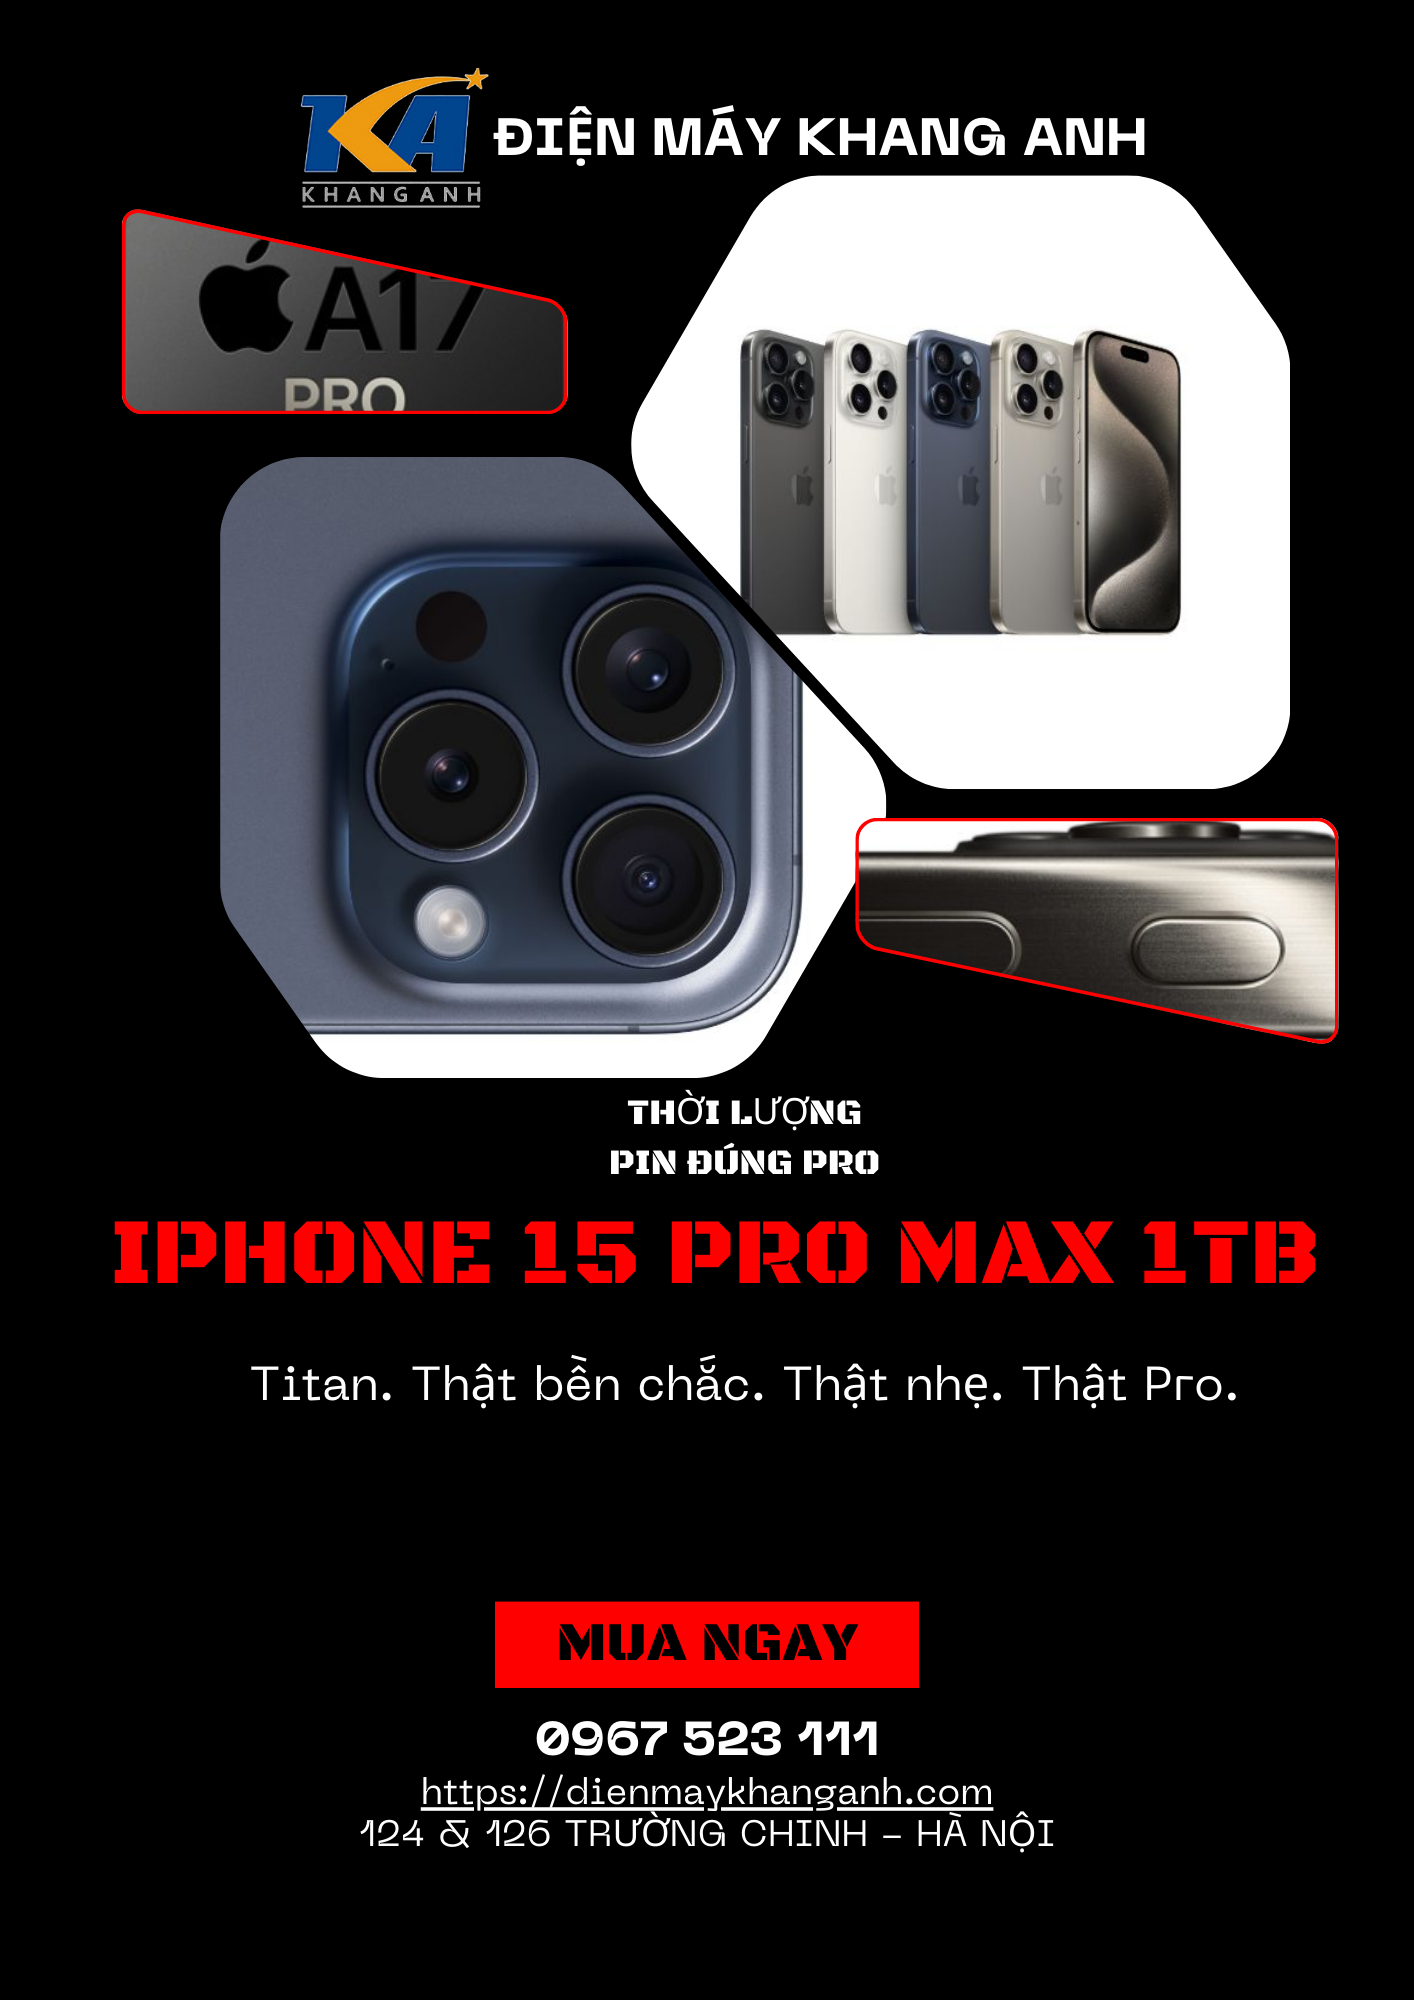 IPHONE 15 RO MAX 1TB